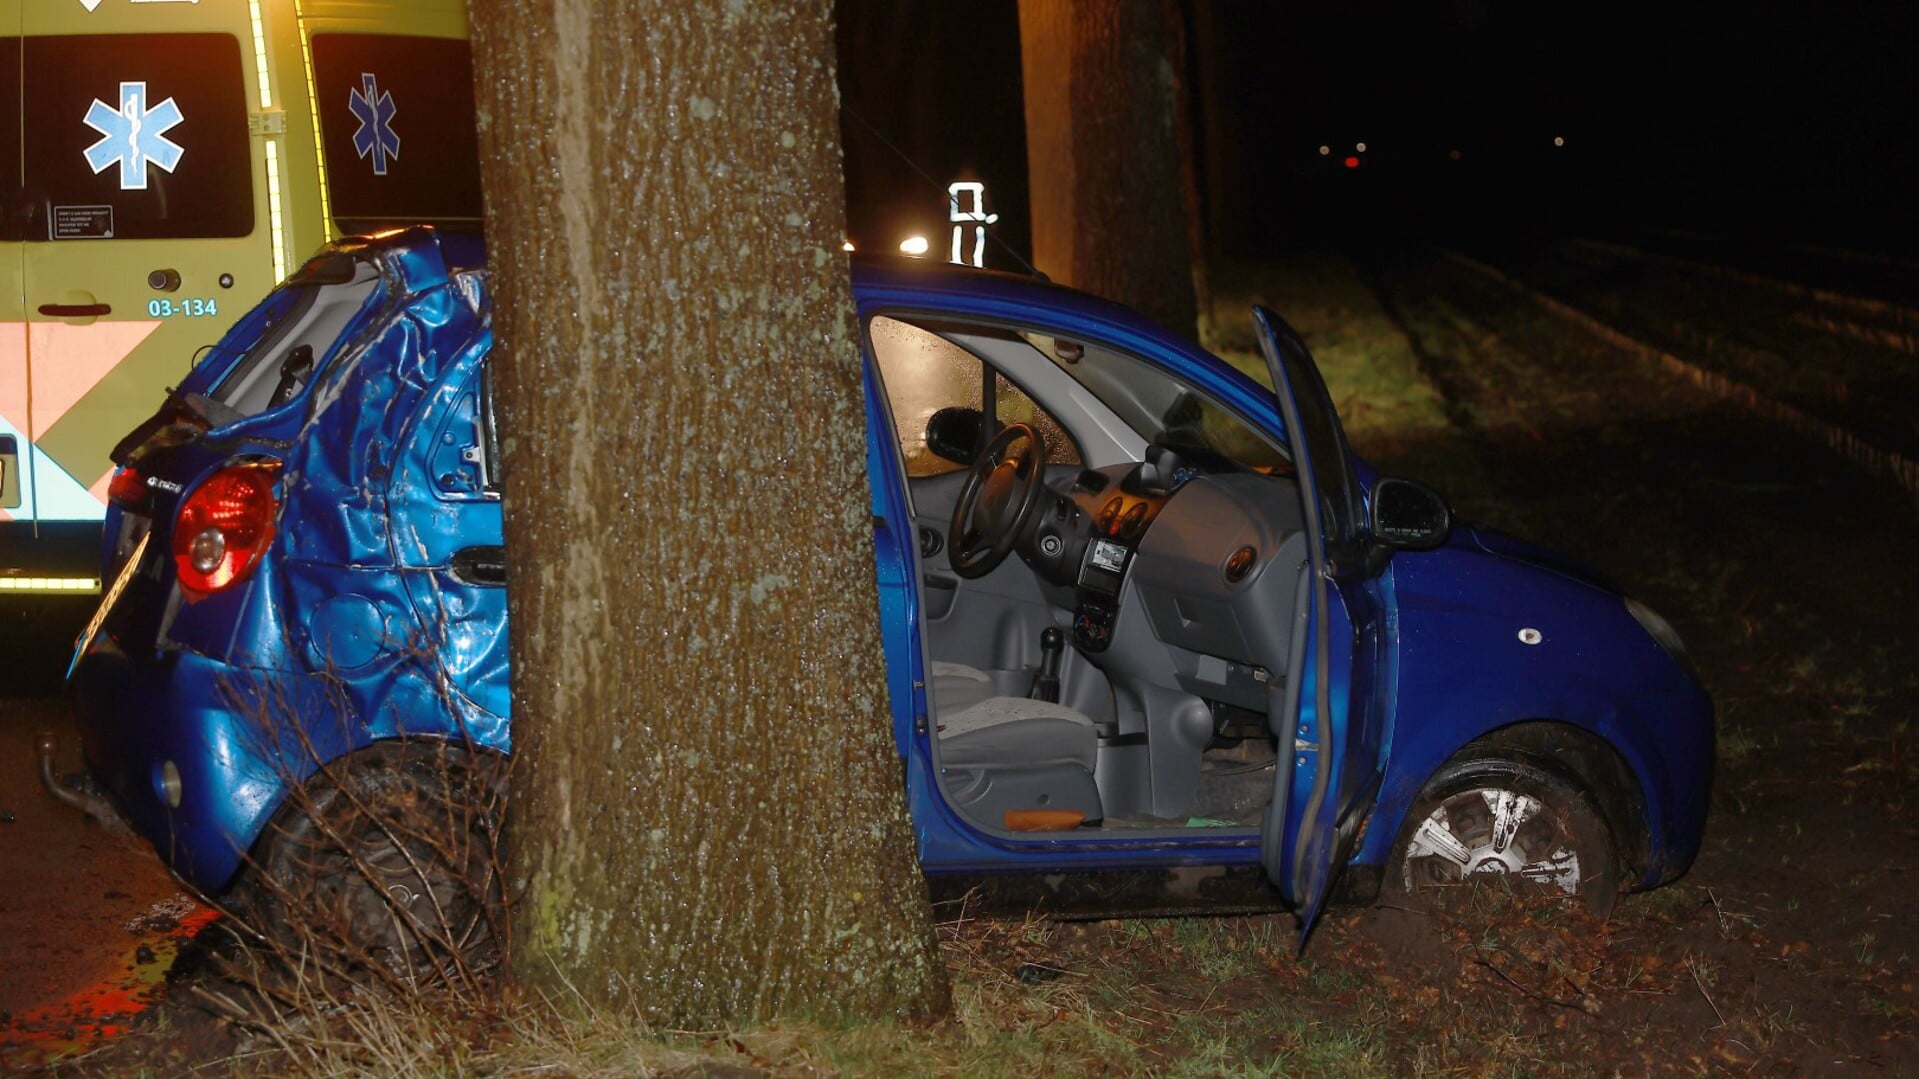 In de auto werd alleen op de bijrijdersstoel een persoon aangetroffen. (foto: Persbureau Drenthe)